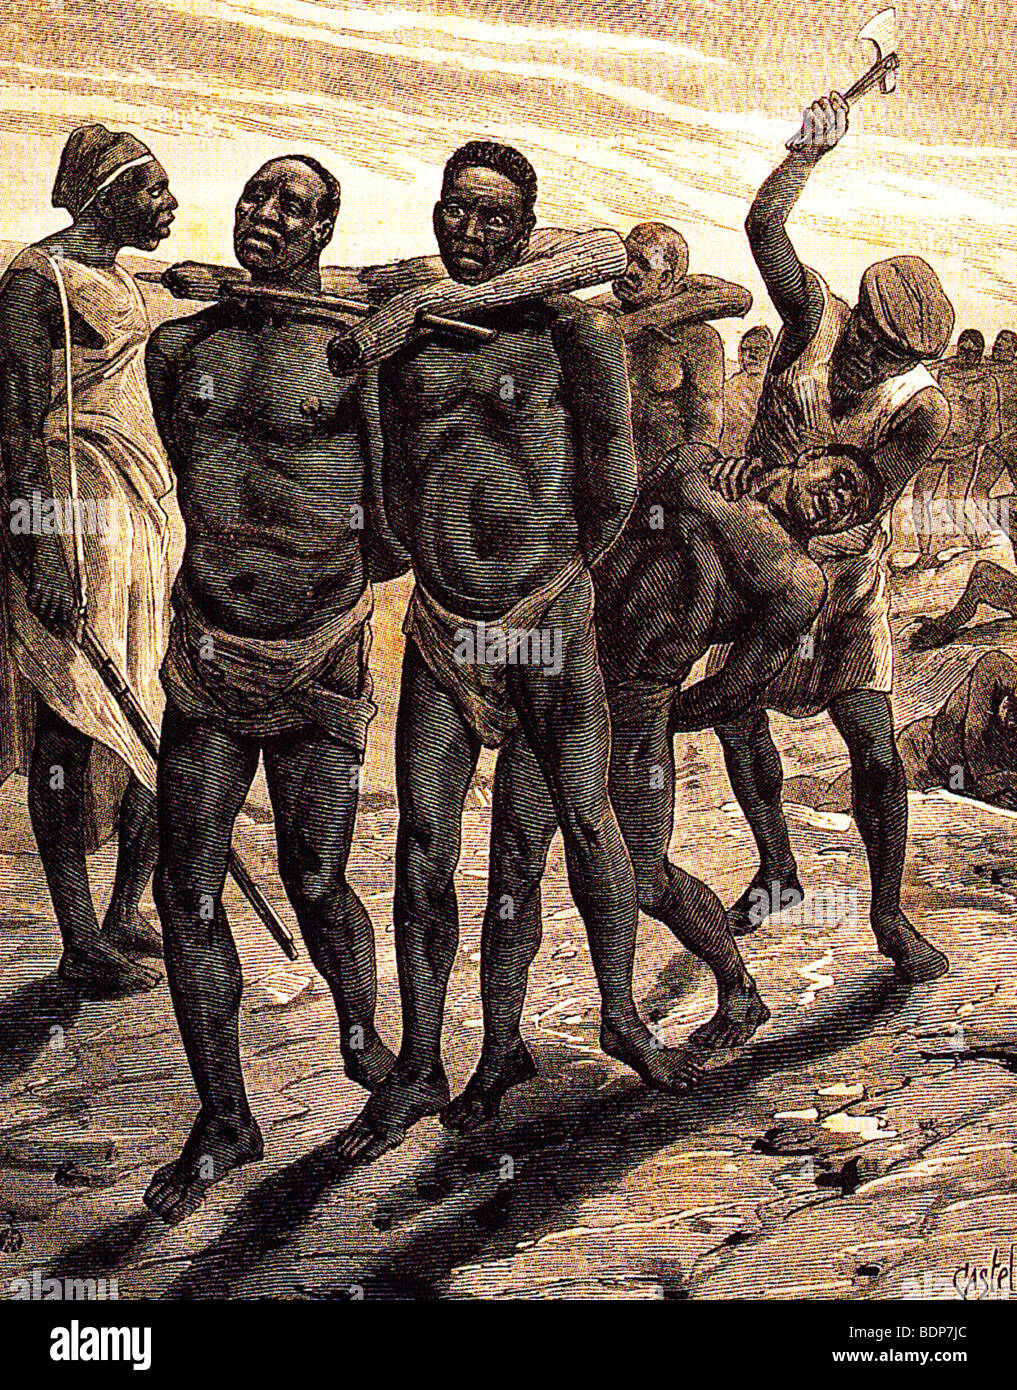 Ilustración de la revista francesa la esclavitud negreros árabes con sus prisioneros Foto de stock